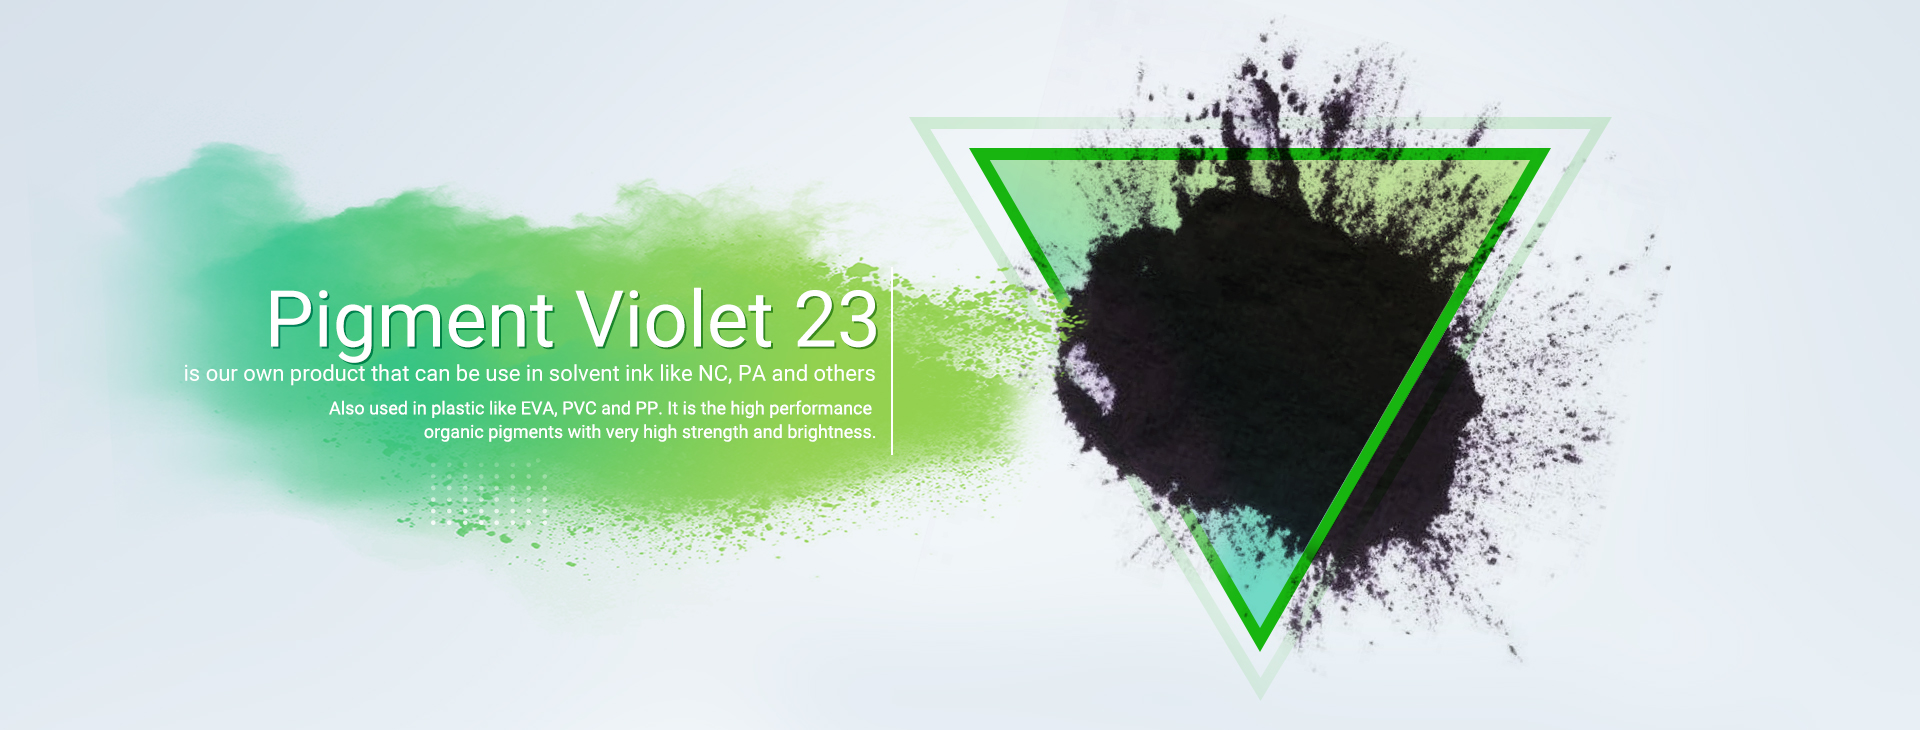 Corante Efficient Solvent Black 27, amplamente utilizado na indústria de plásticos